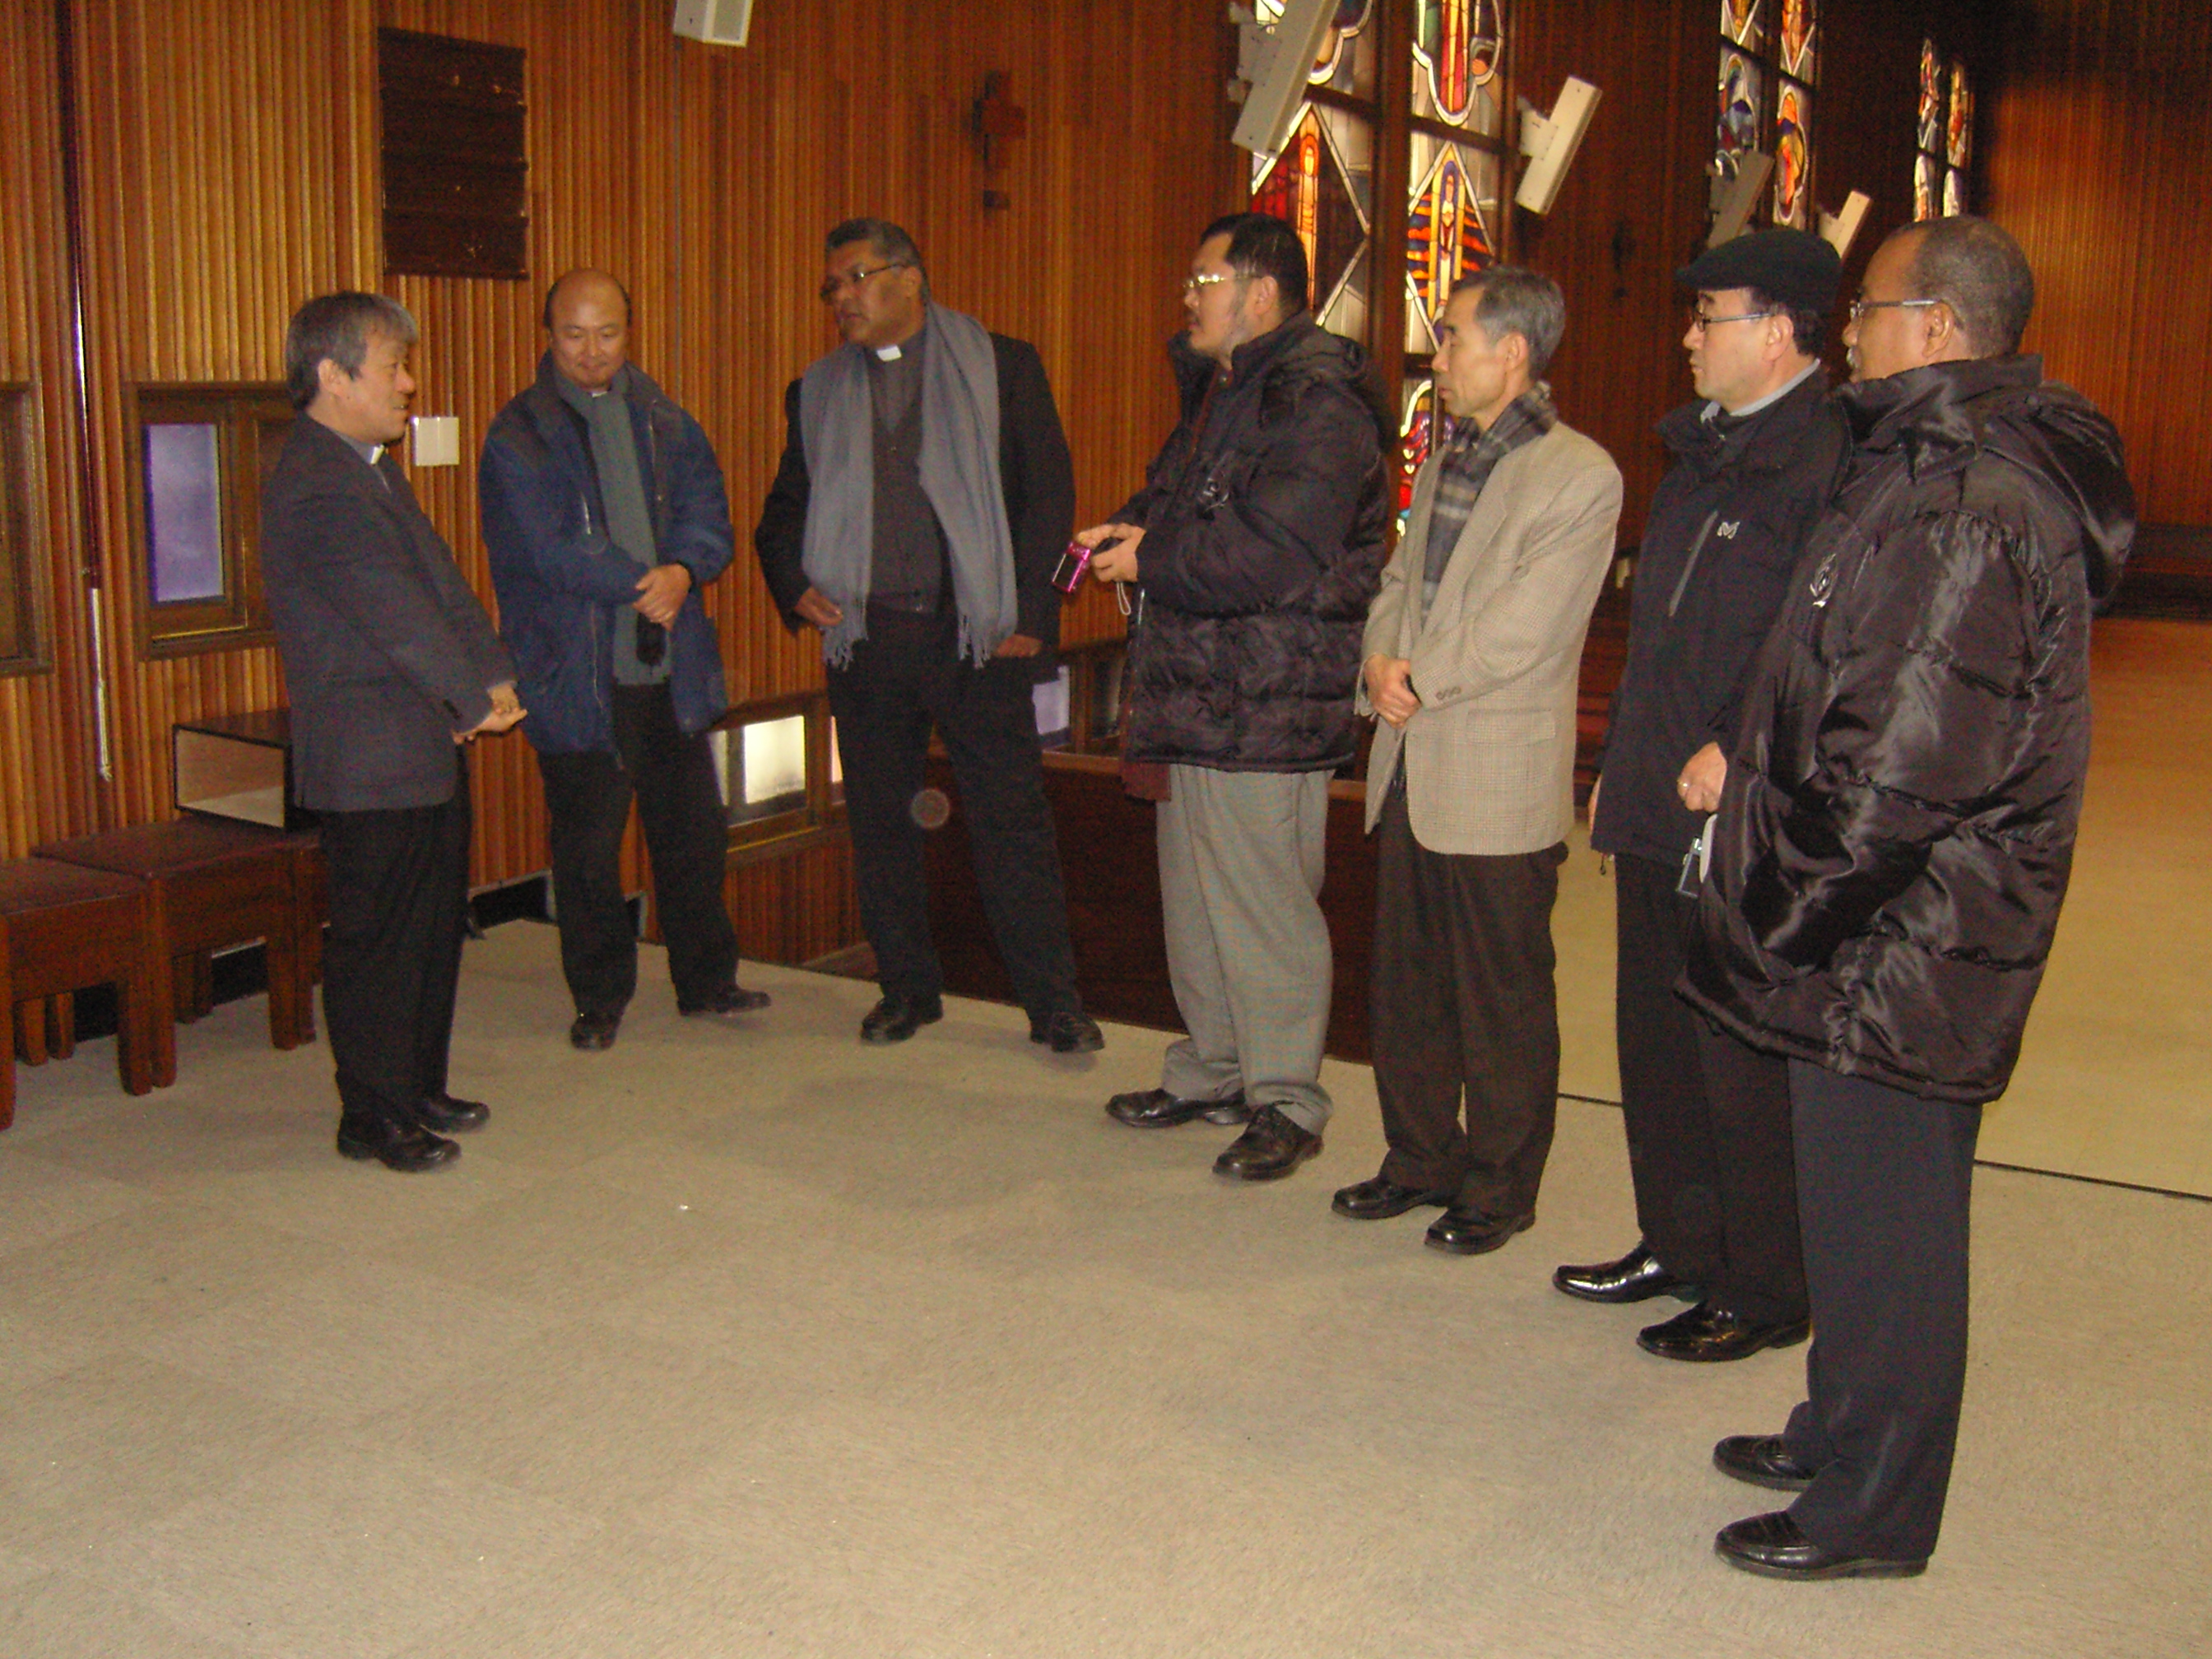 파나마 대주교 방문(2011.2.7)의 관련된 이미지 입니다.